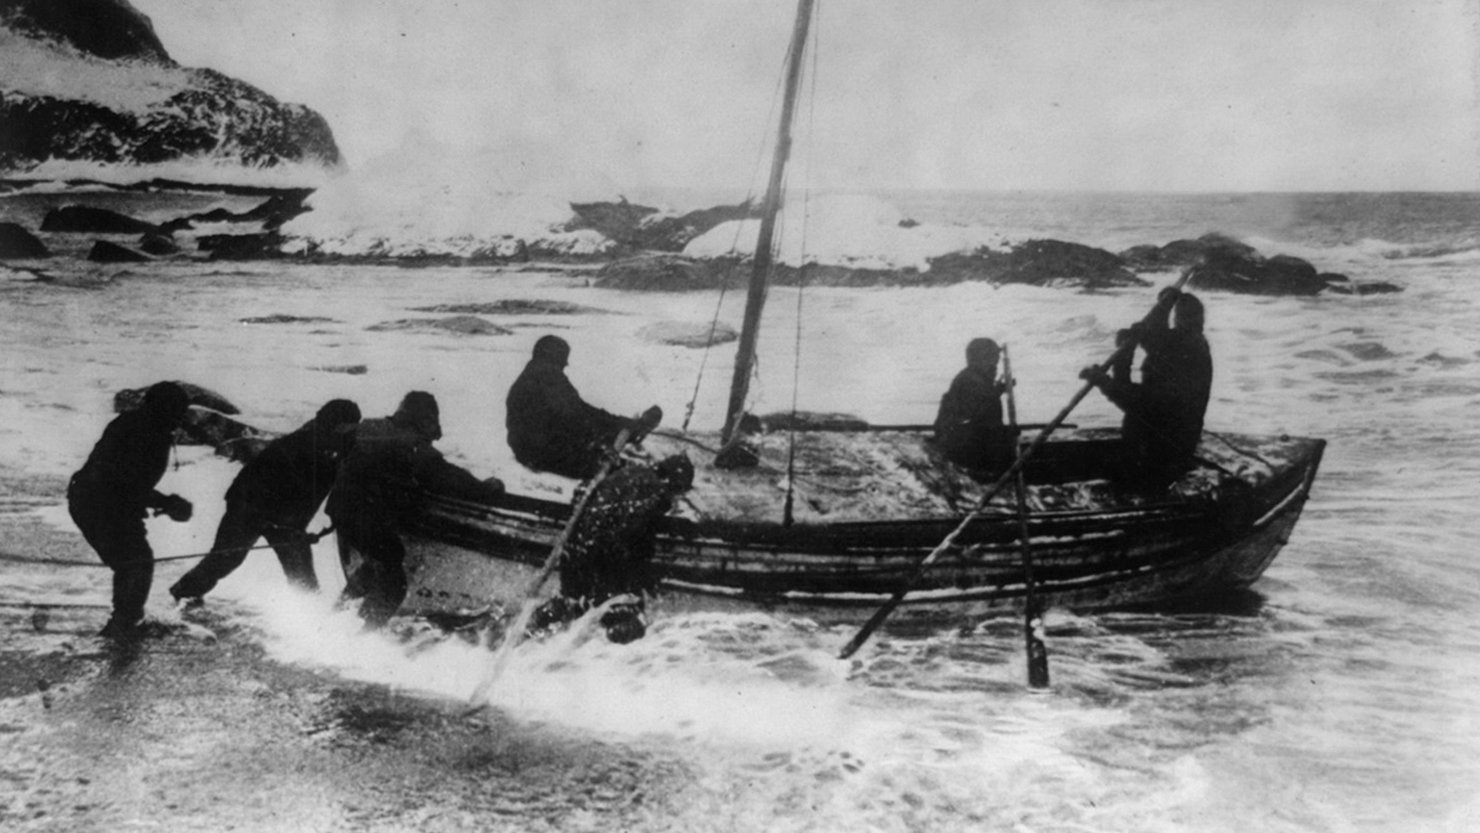 Endurance rescue mission led by Ernest Shackleton